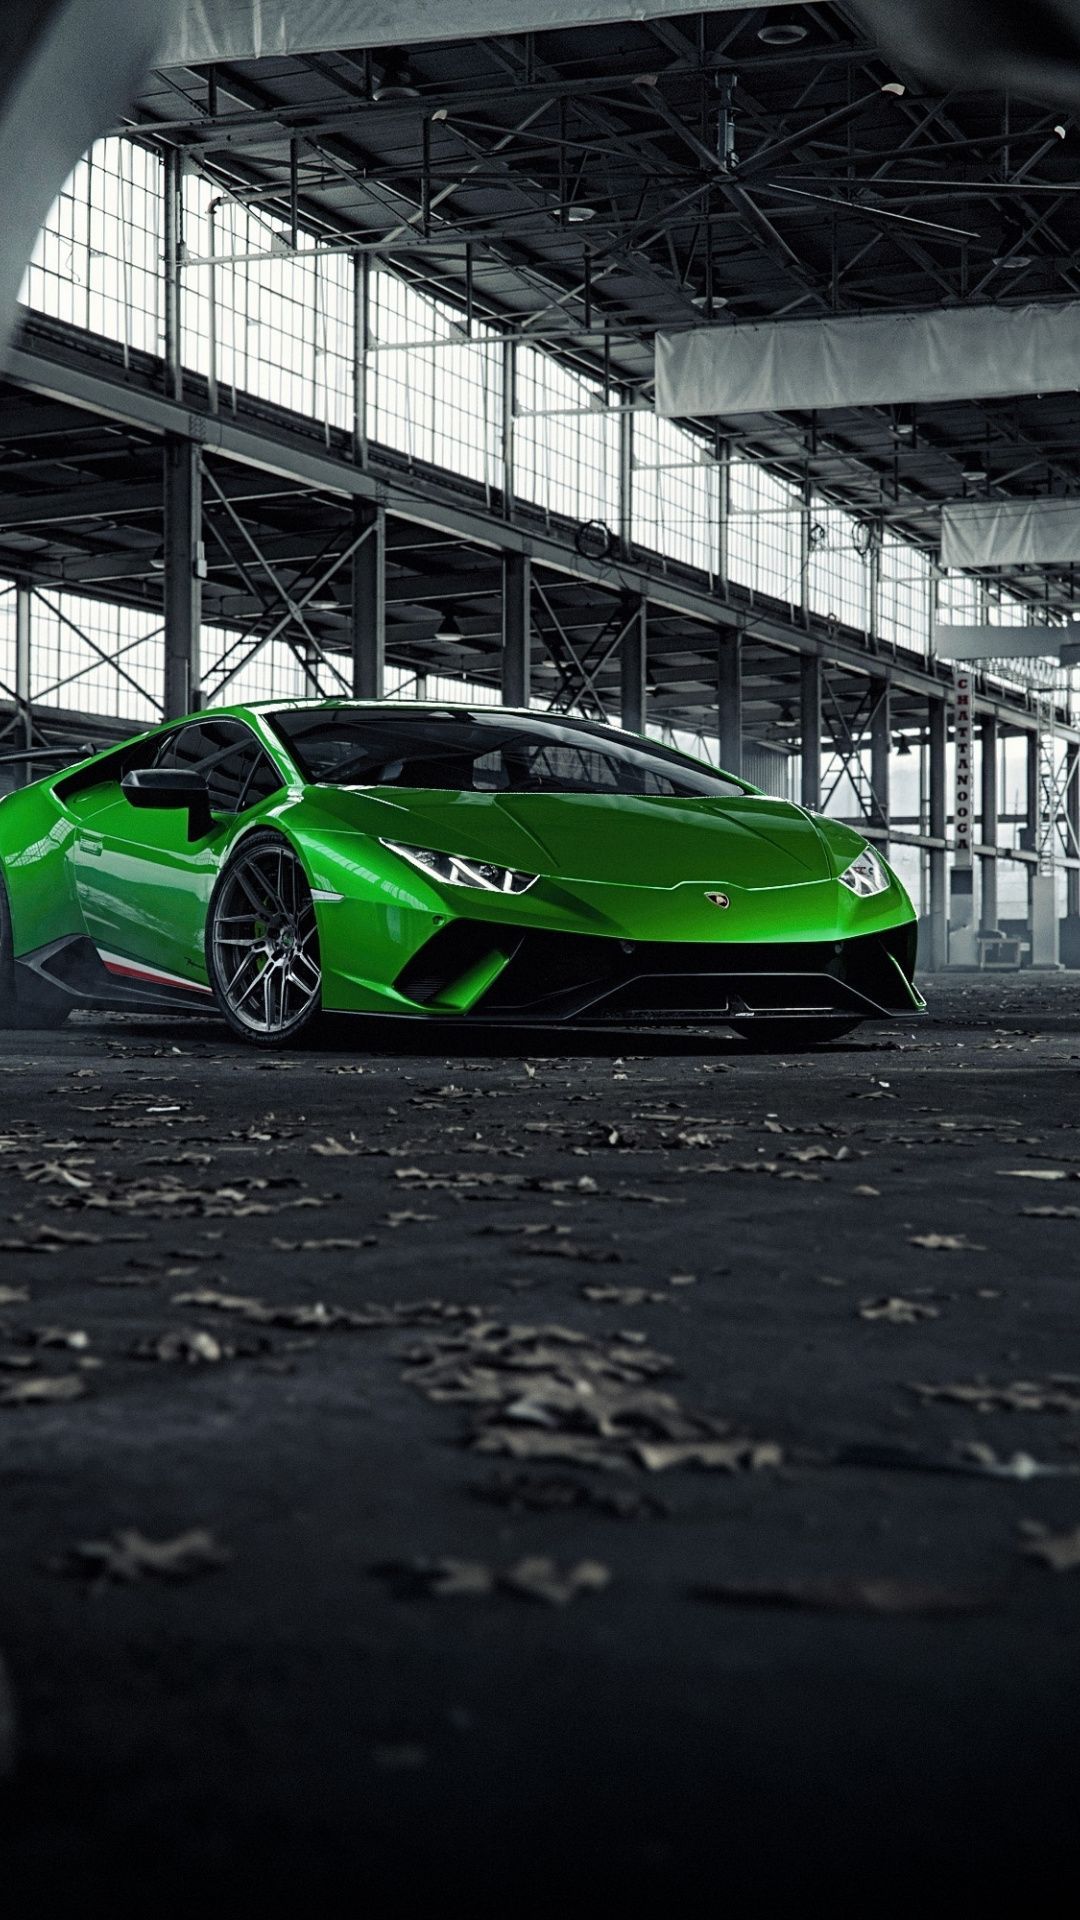 Green Lamborghini Huracan, sports car wallpaper. Green lamborghini, Car wallpaper, Sports car wallpaper